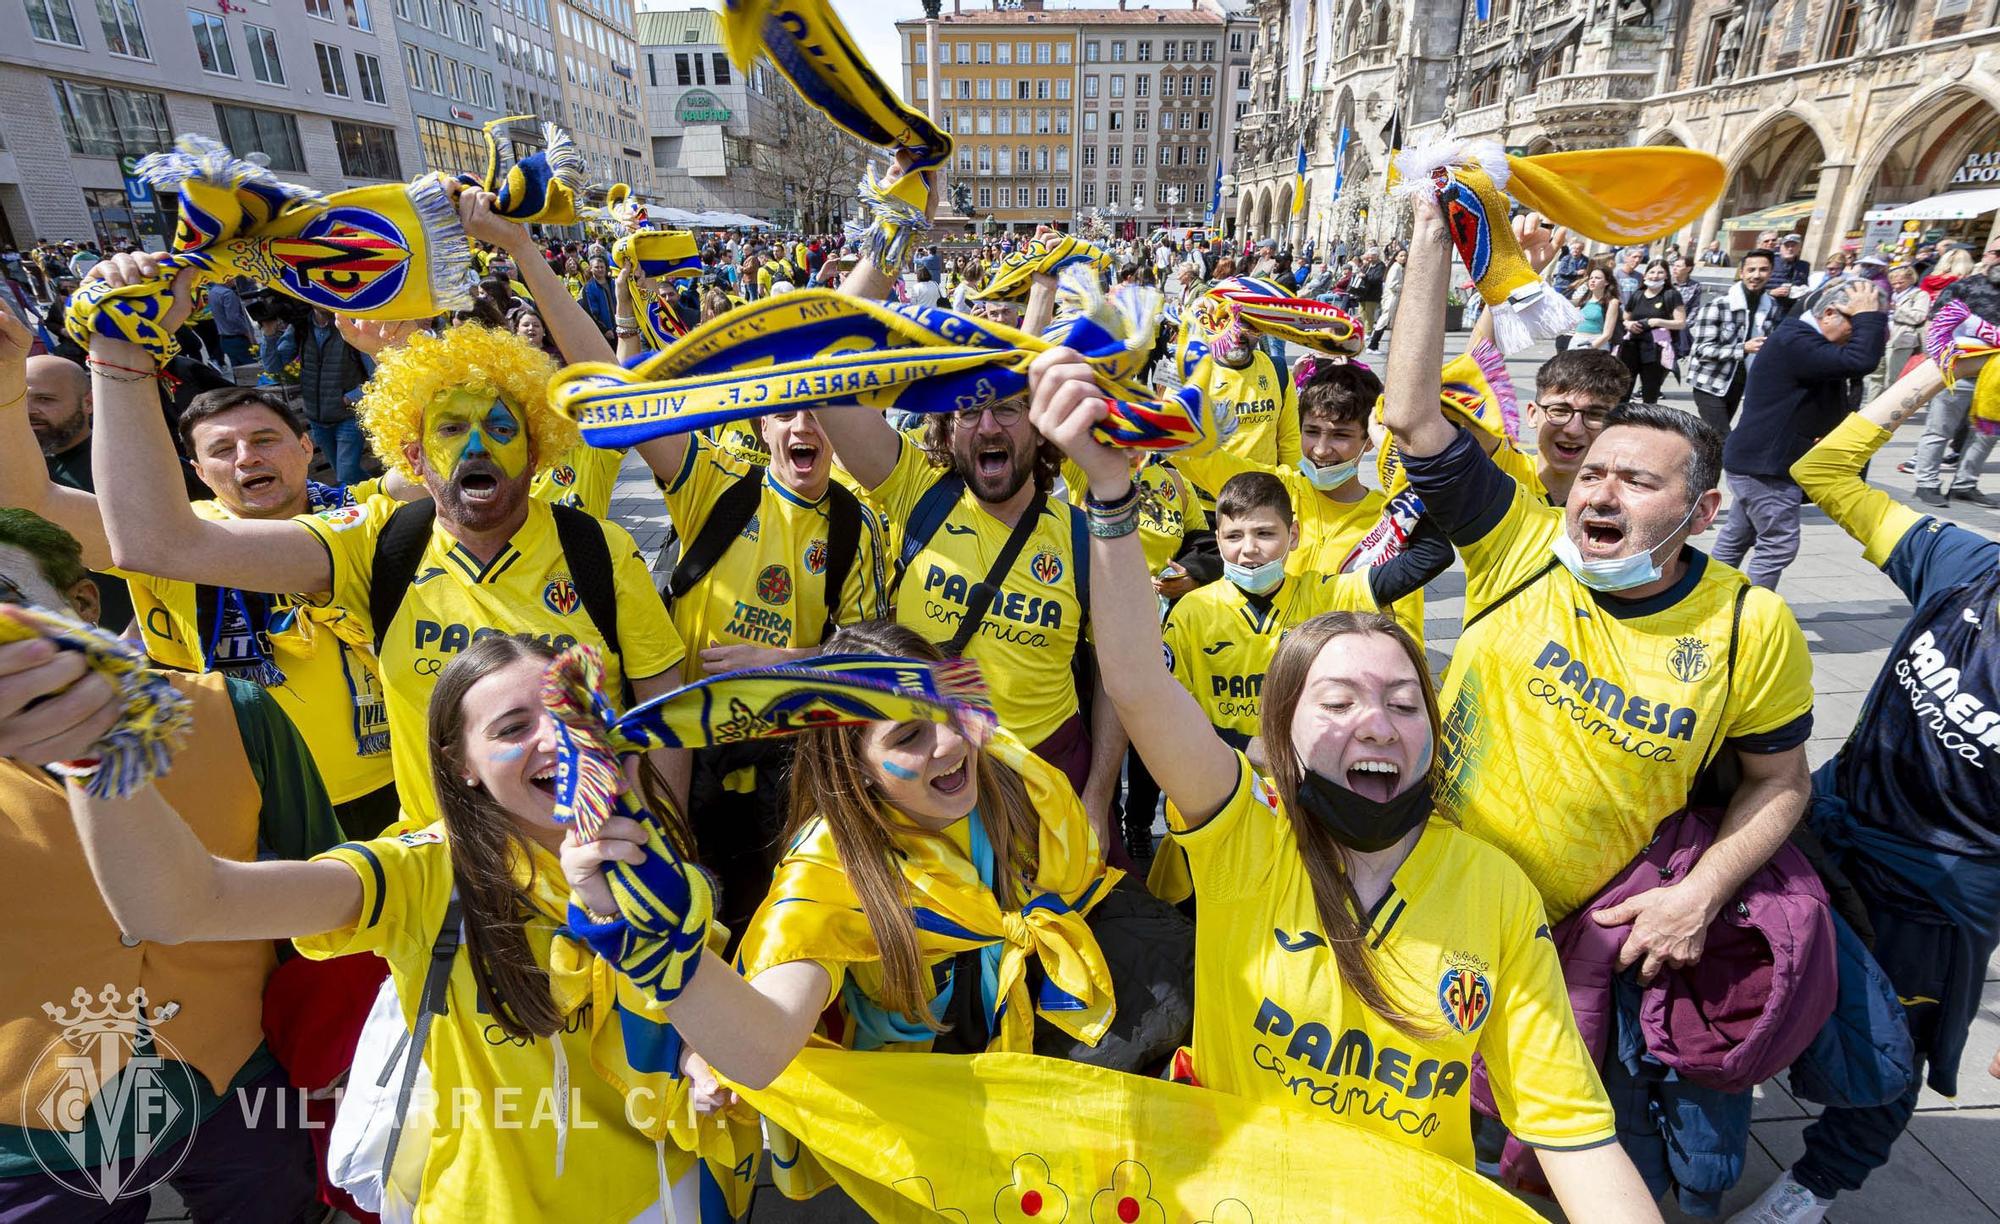 La afición del Villarreal CF toma las calles de Múnich